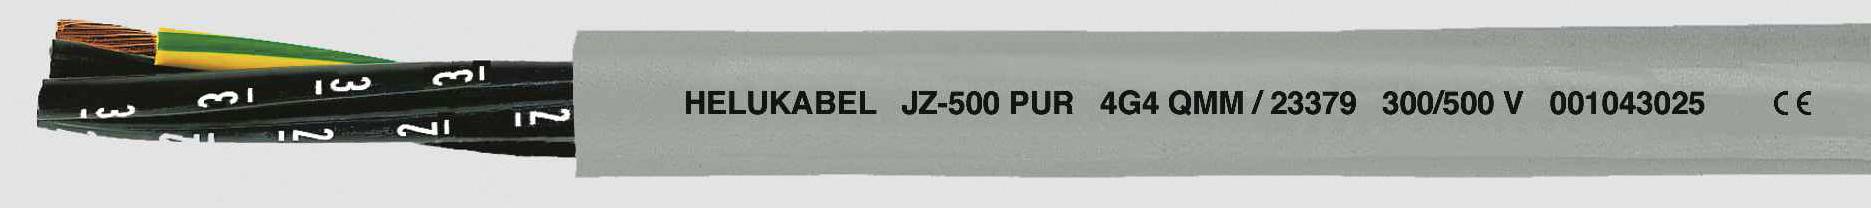 HELUKABEL JZ-500 PUR Steuerleitung 3 G 2.50 mm² Grau 23374 100 m